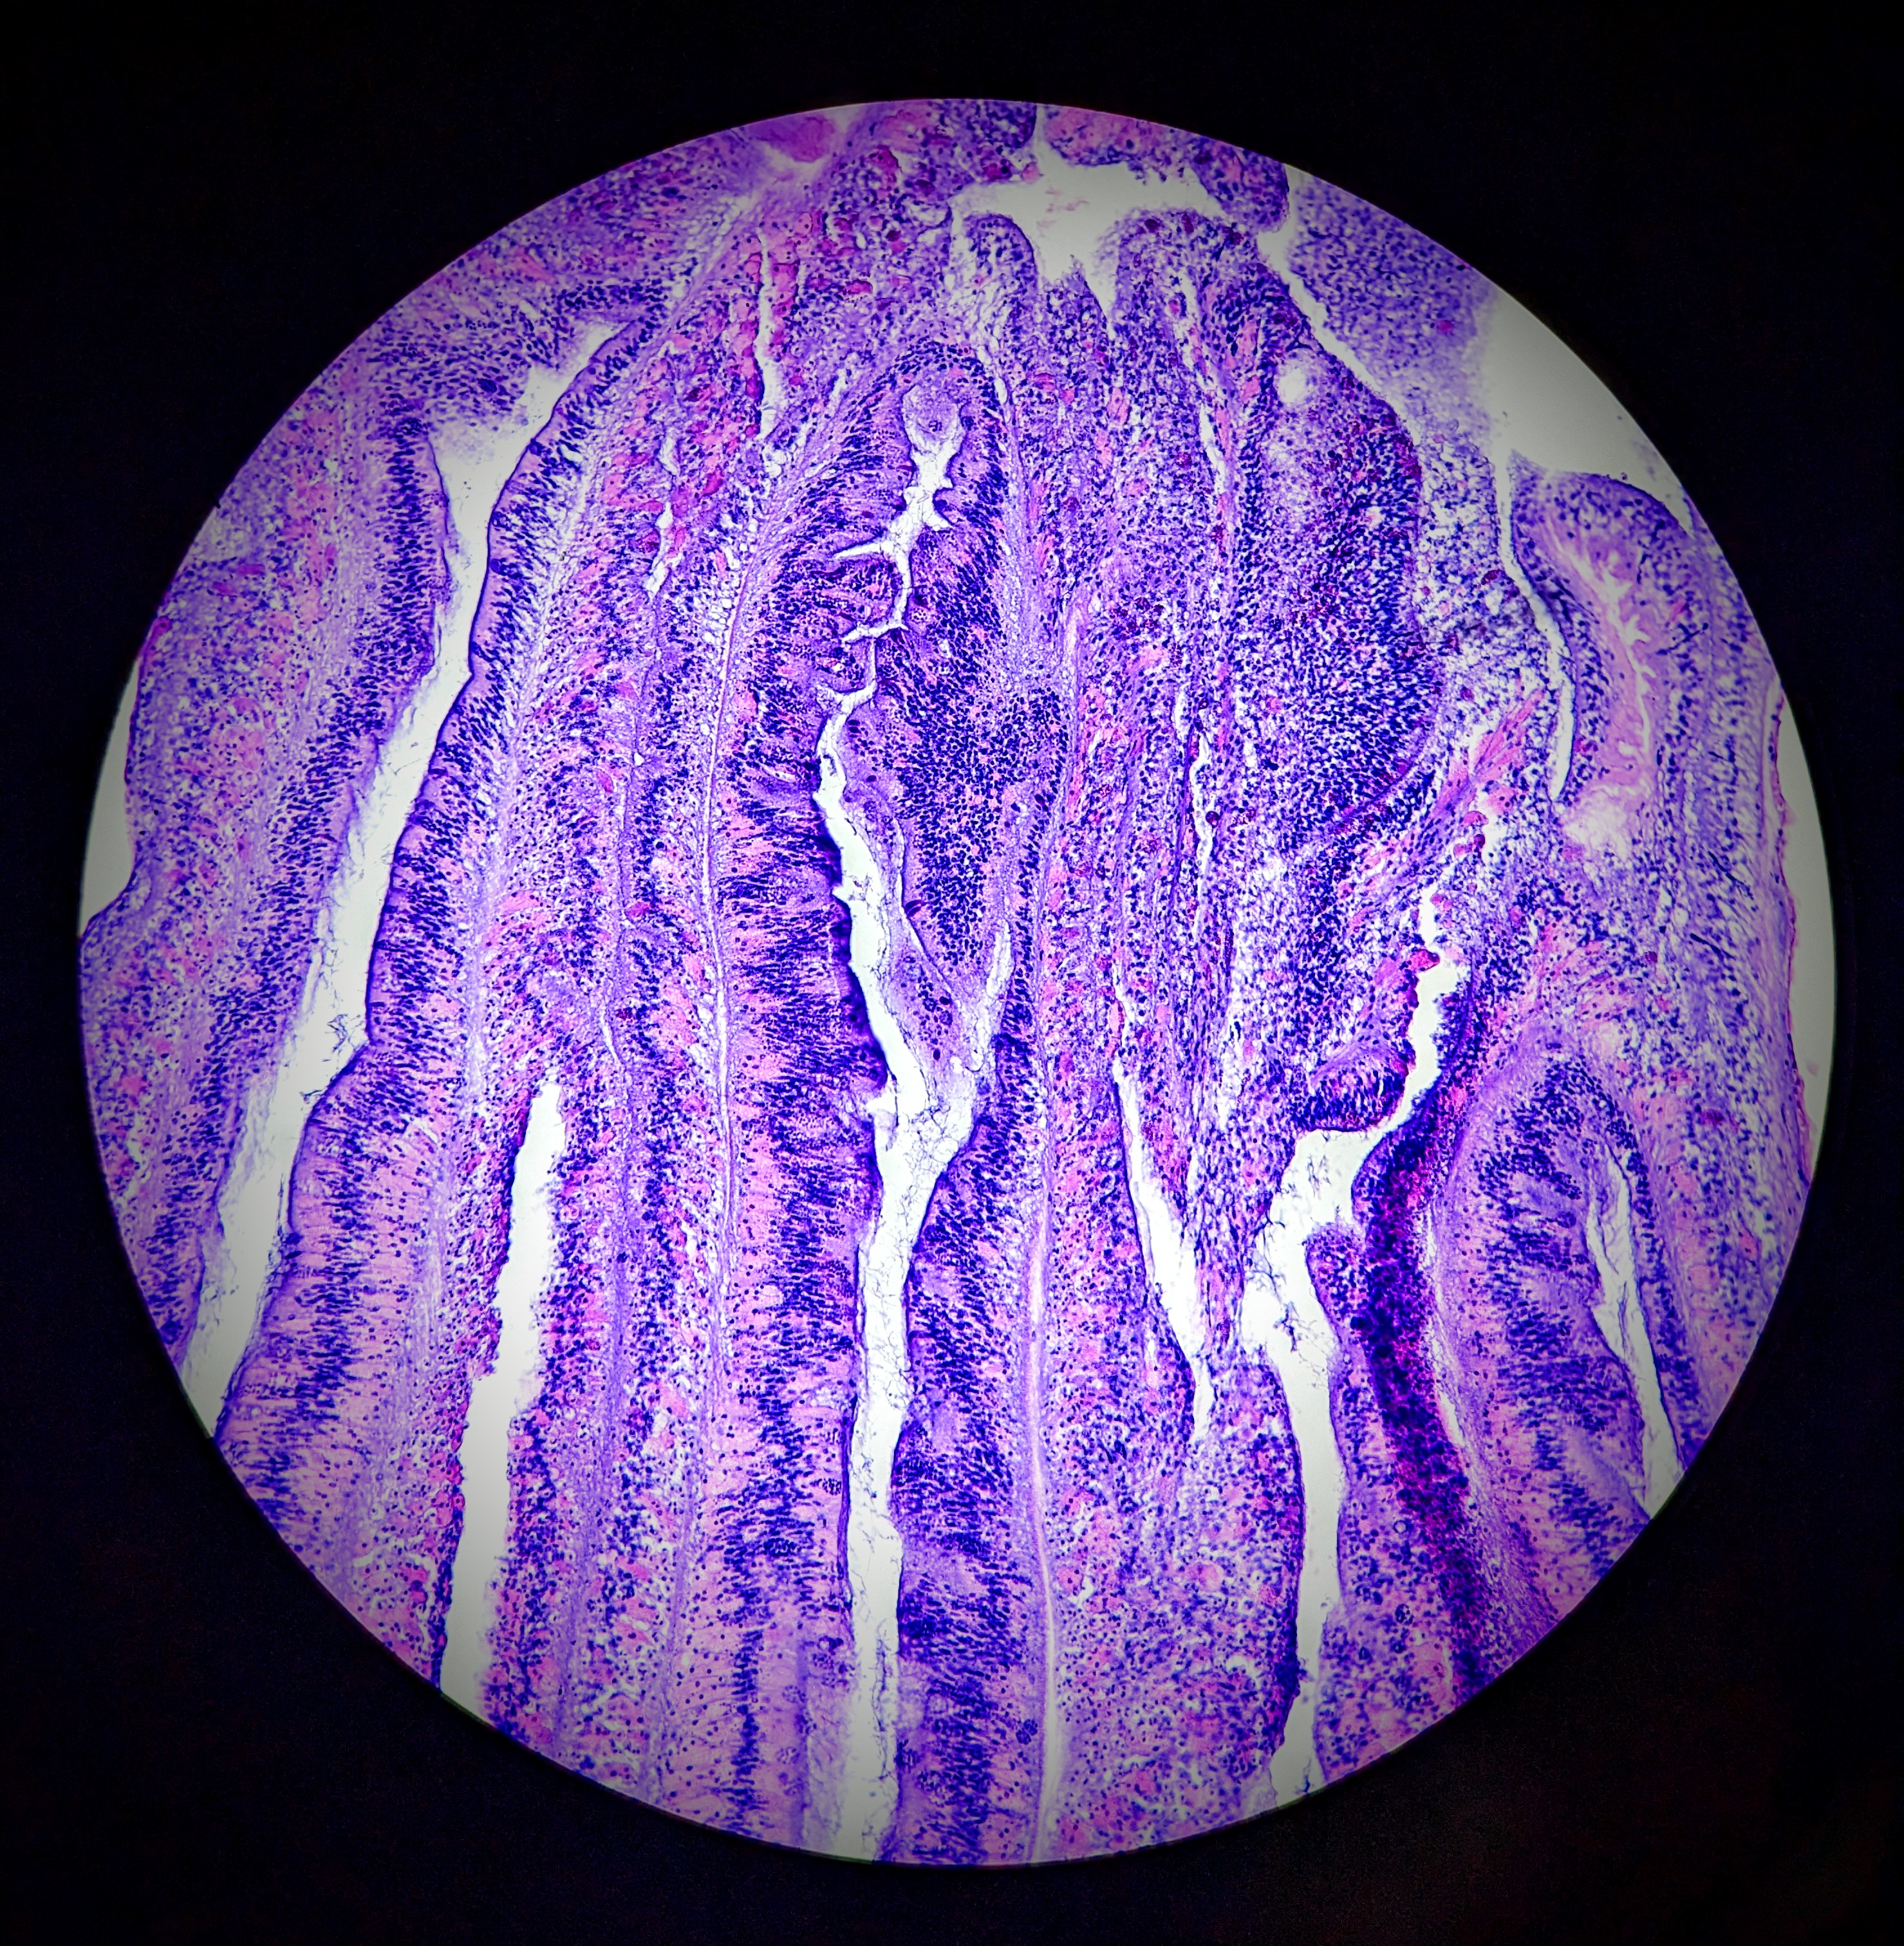 Pillar coral tissues seen through a microscope.